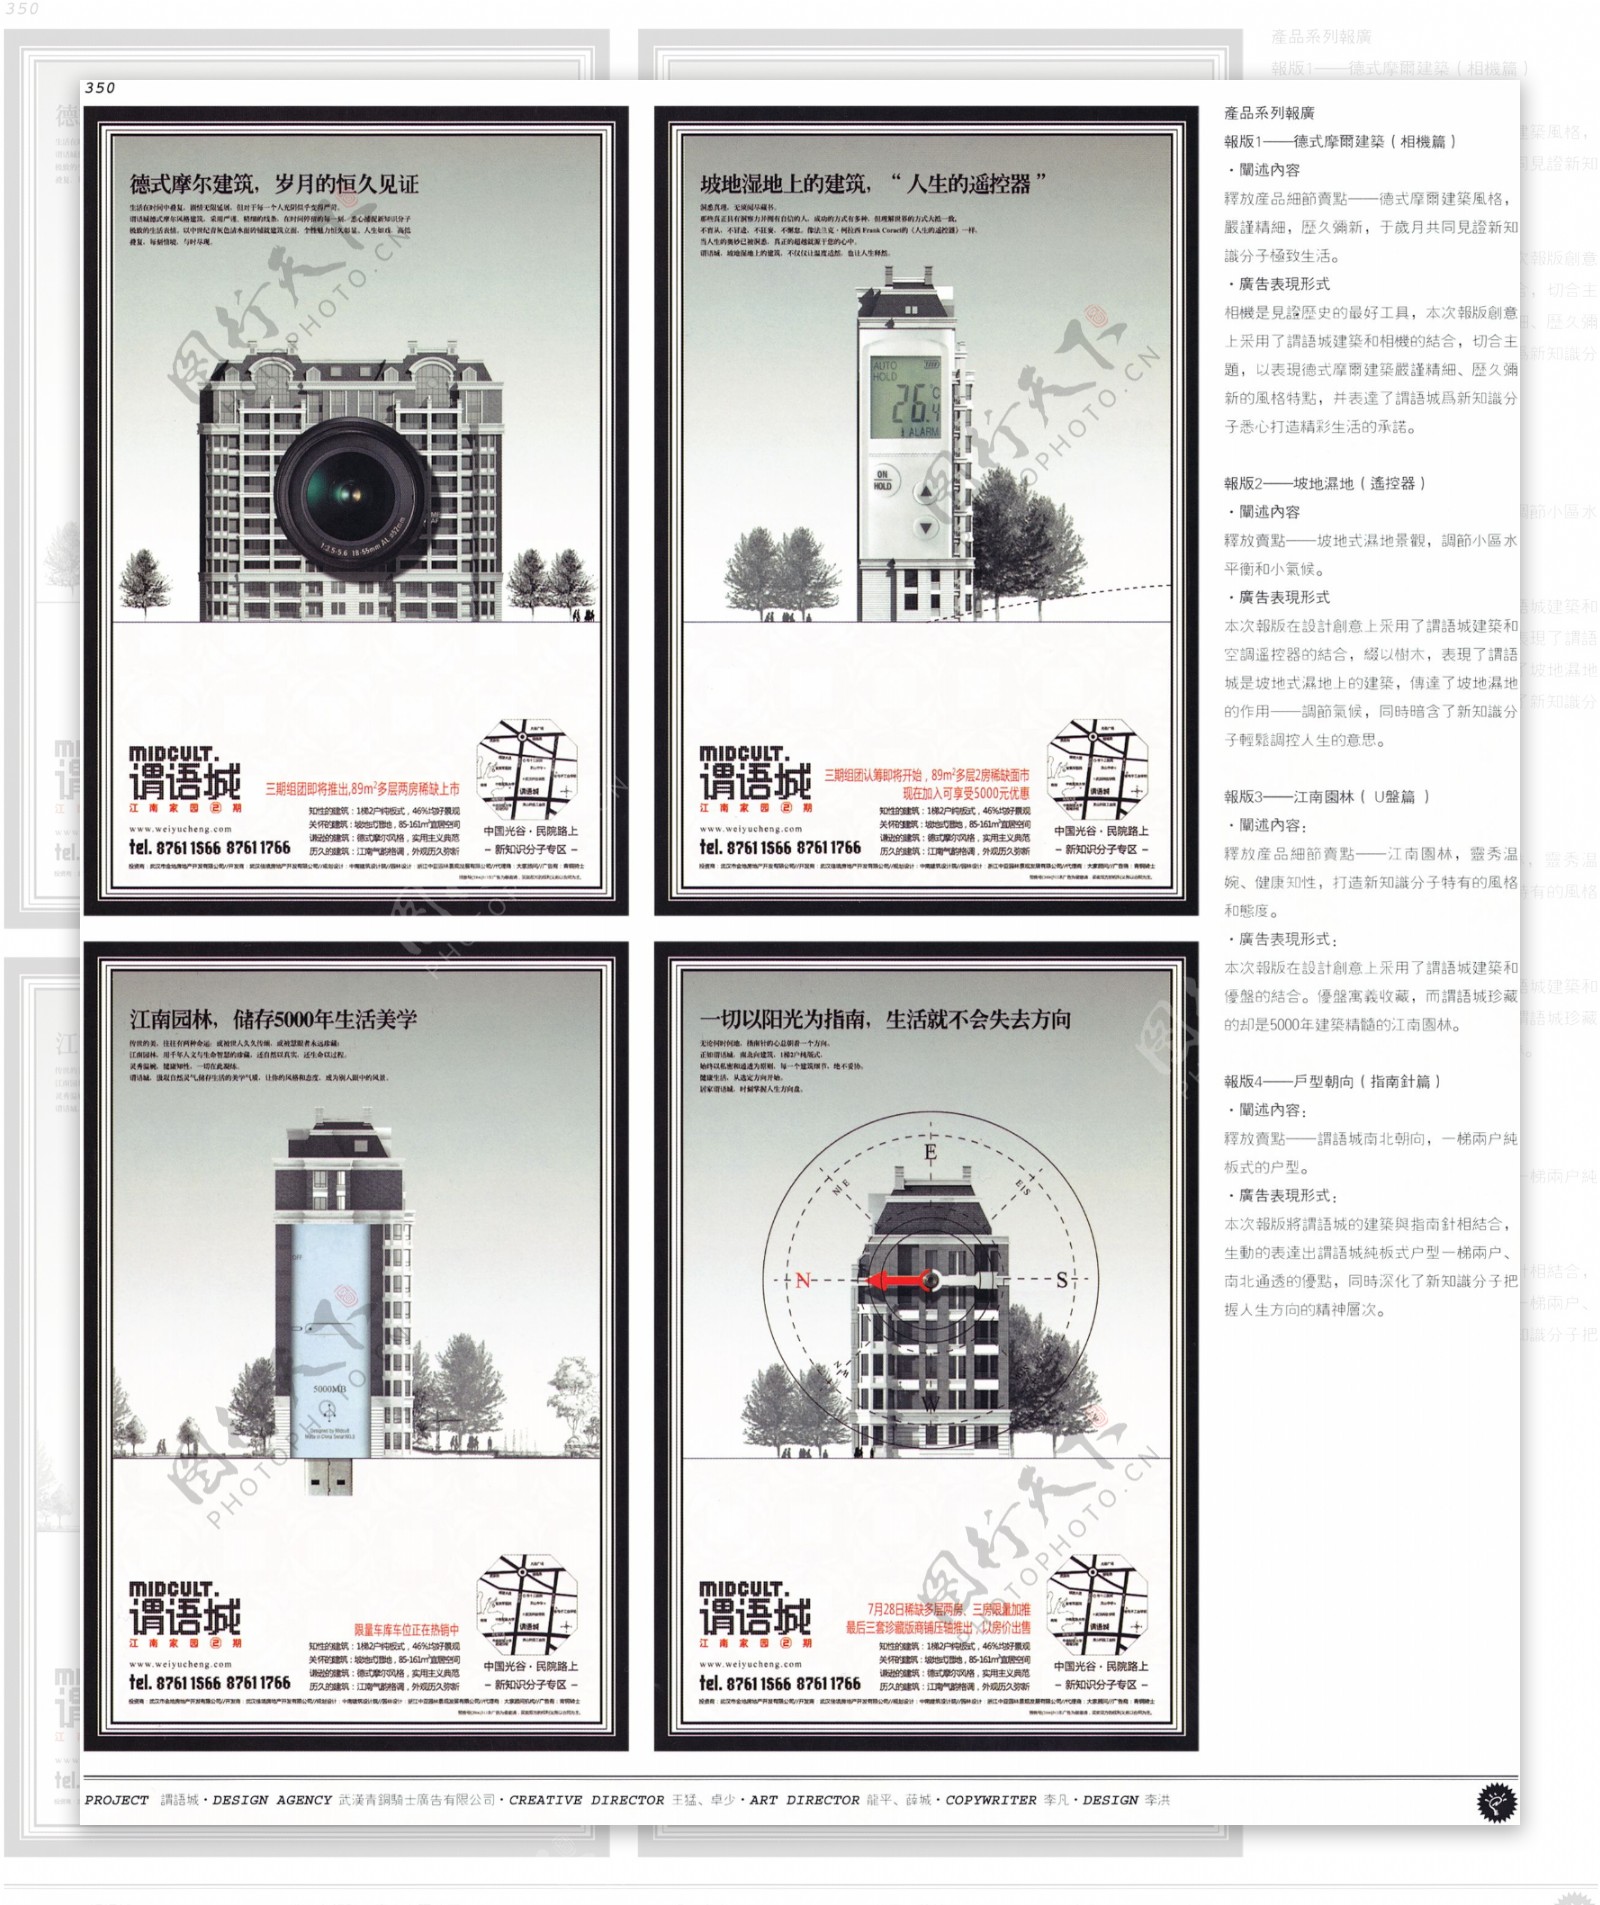 中国房地产广告年鉴第二册创意设计0332